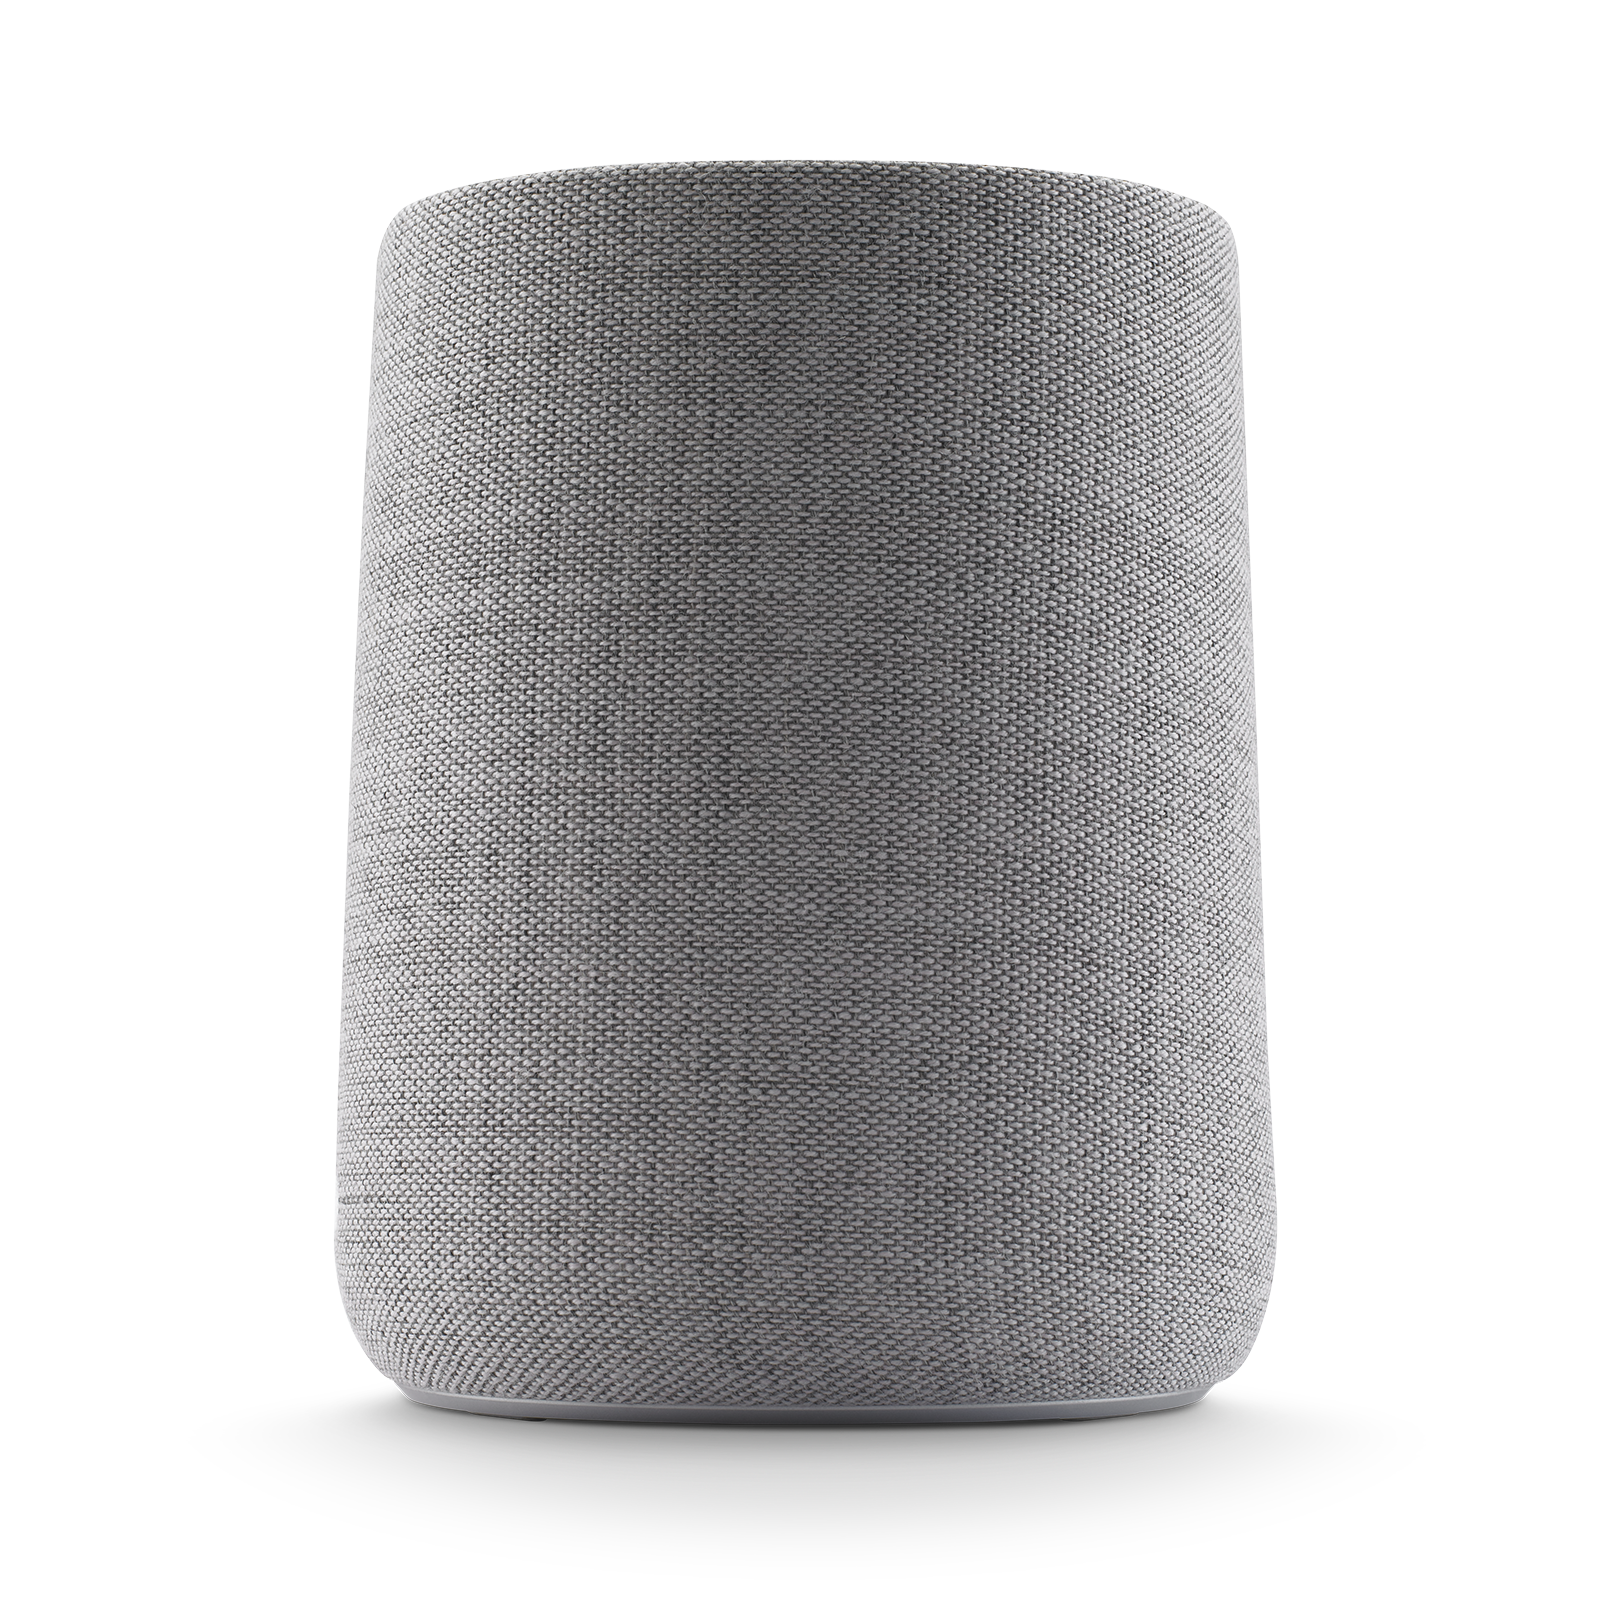 Harman Kardon Citation One MKIII - Grey - All-in-one smart speaker with room-filling sound - Detailshot 1